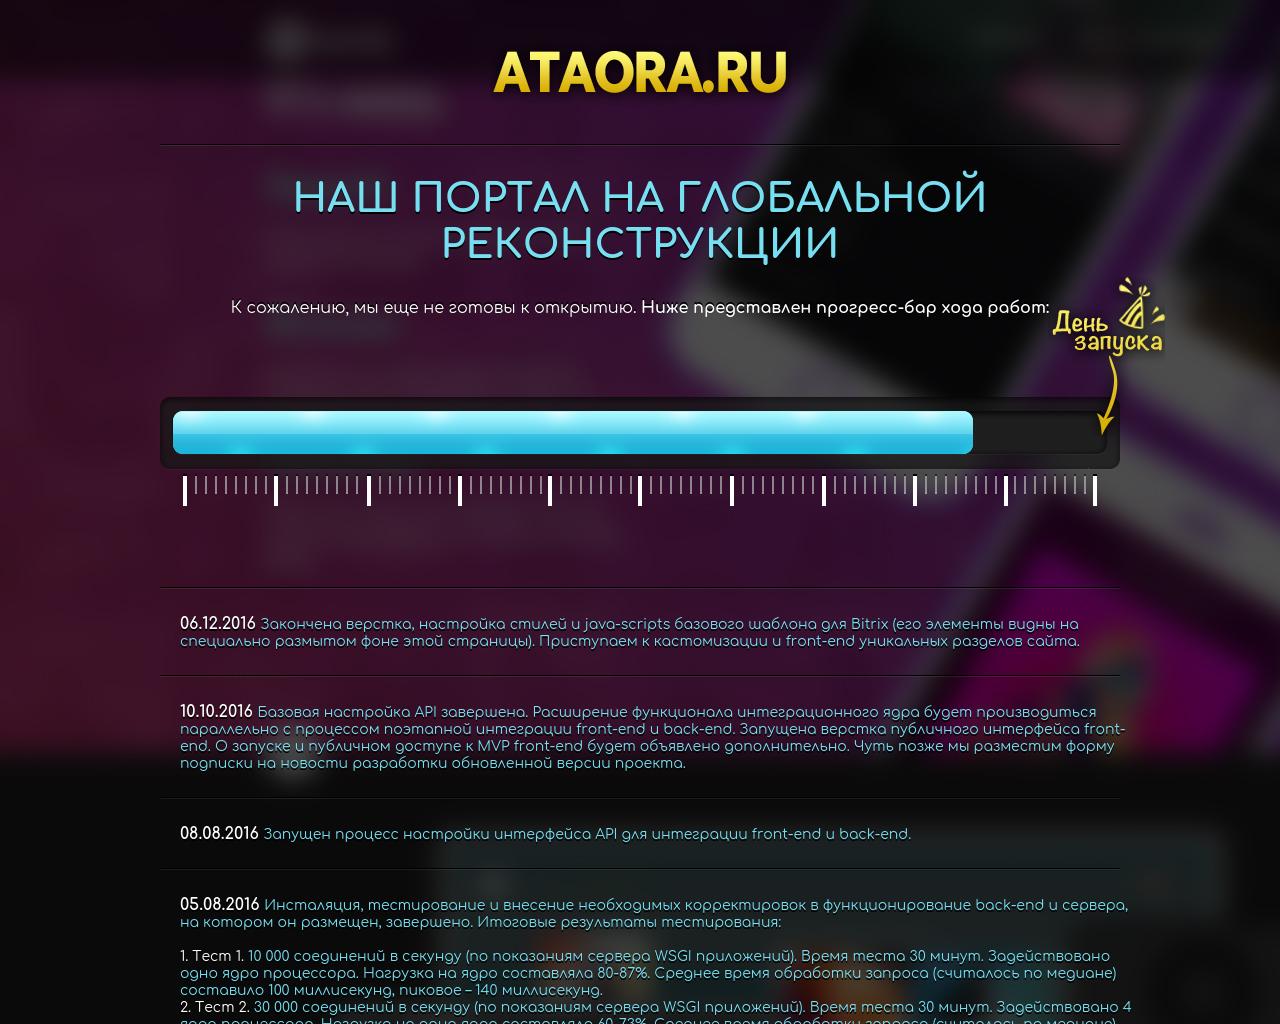 Изображение сайта ataora.ru в разрешении 1280x1024